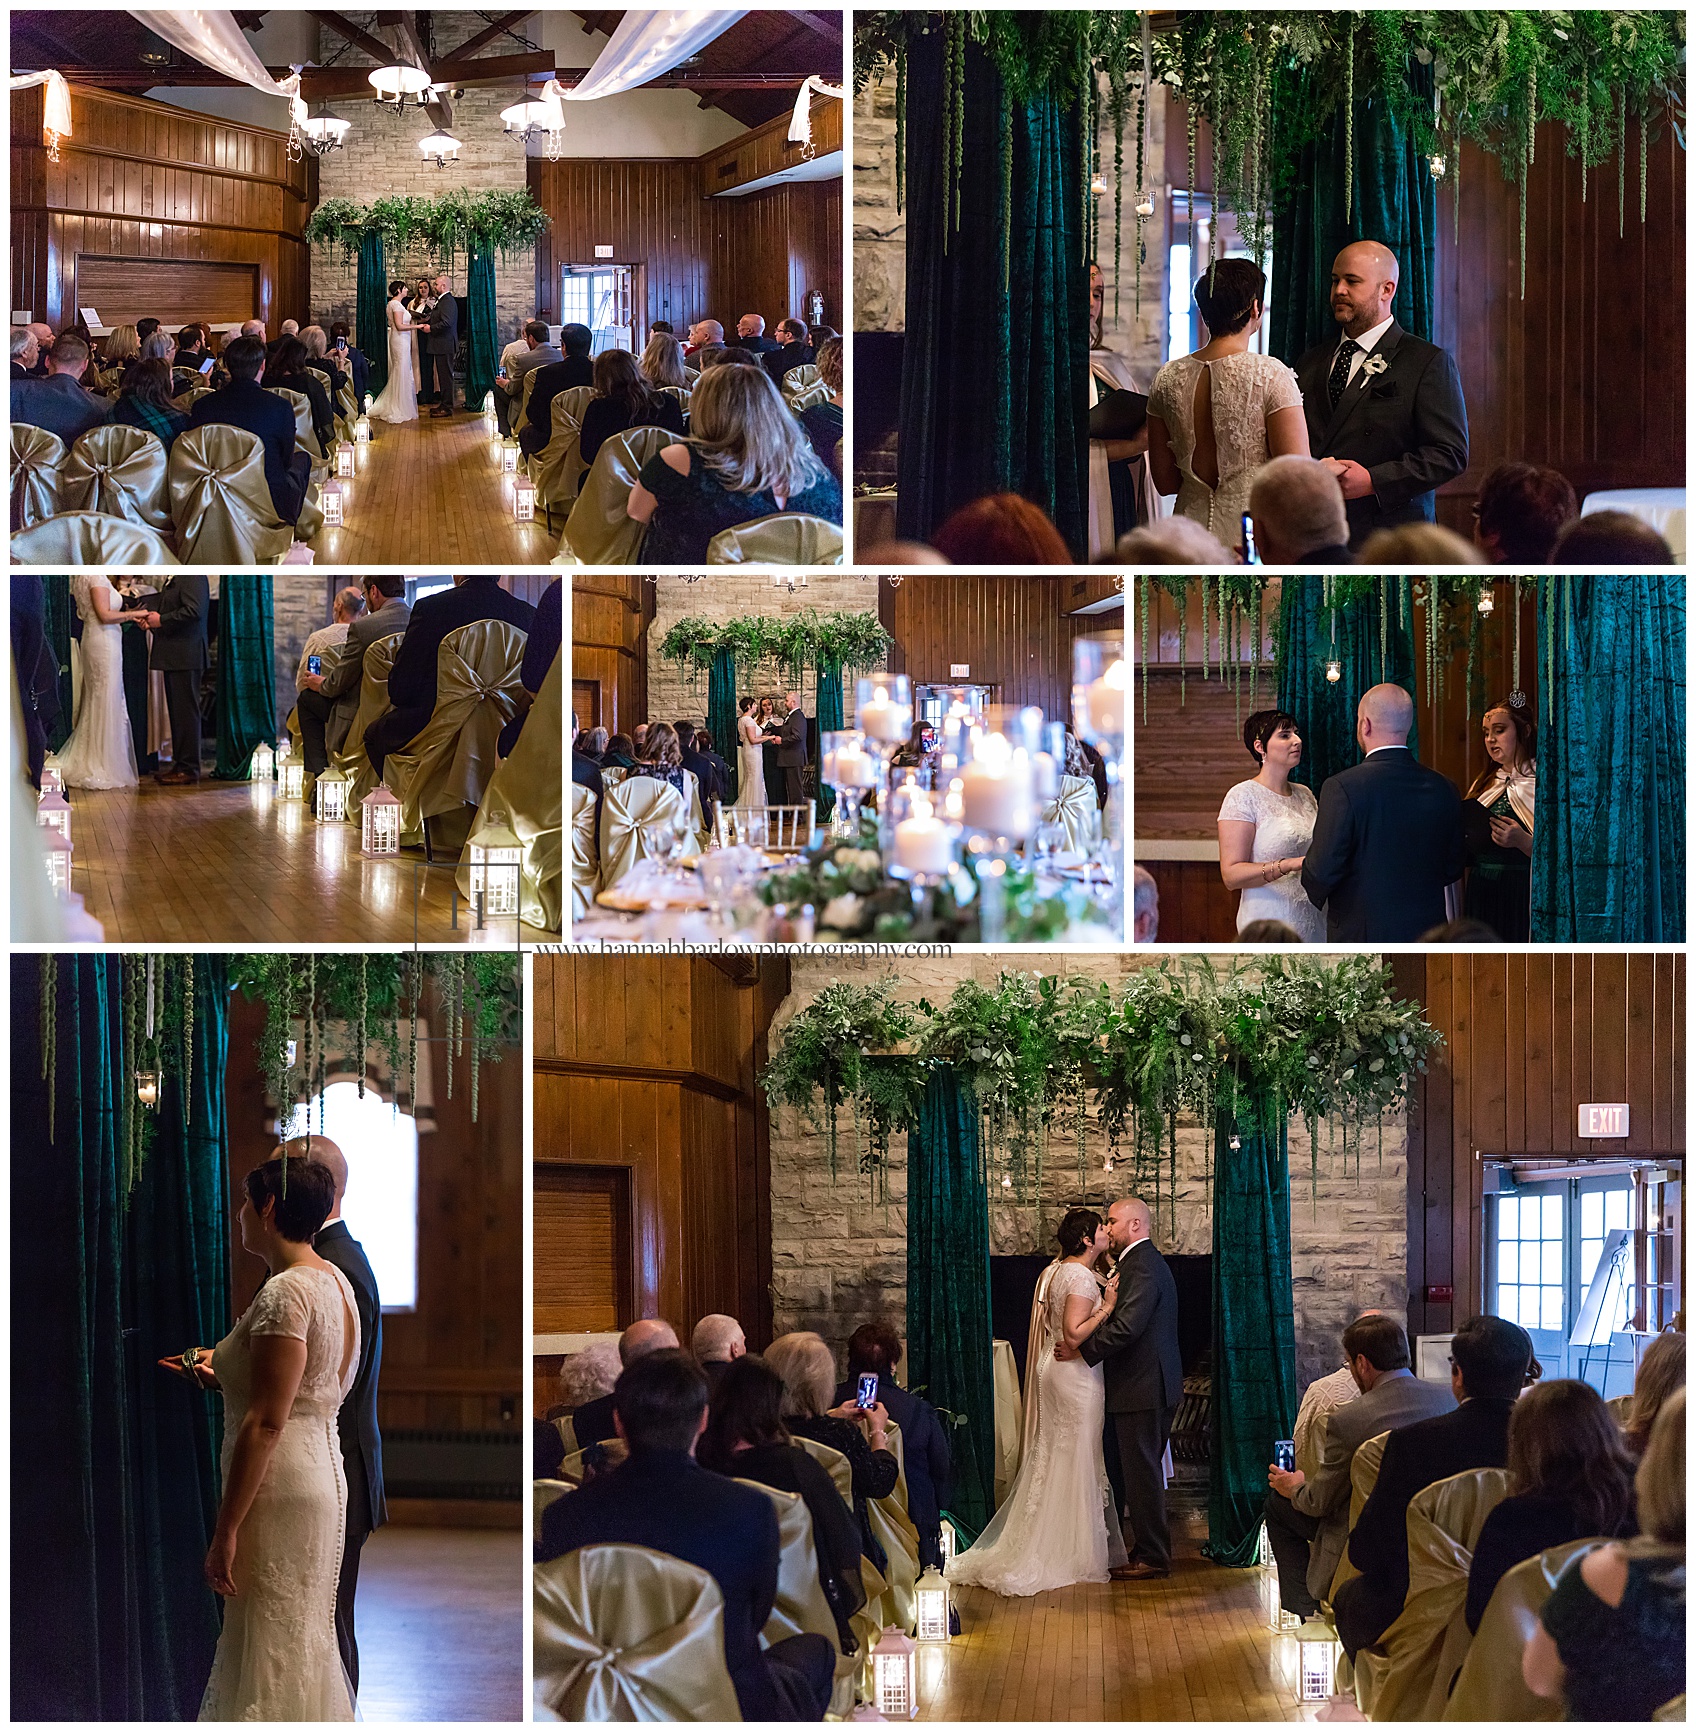 Pine Room Wedding Ceremony